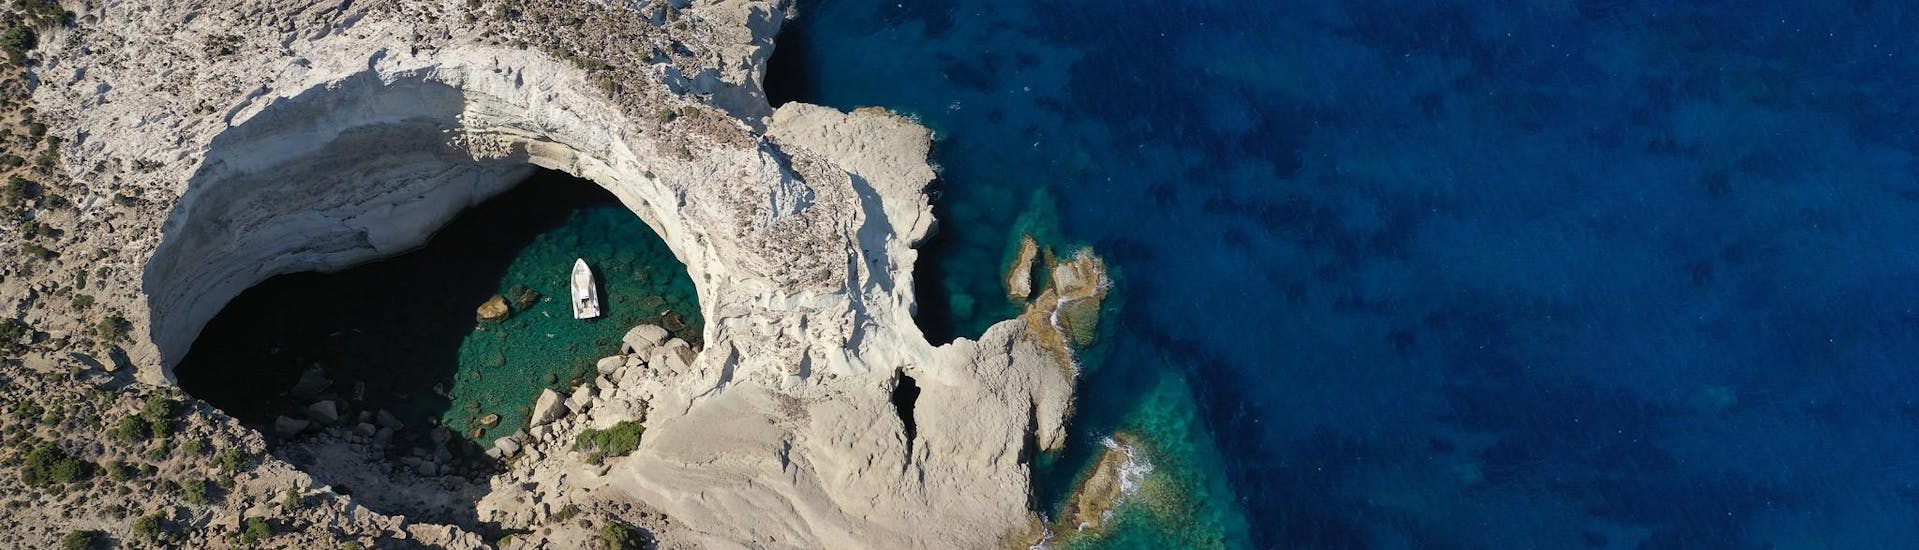 Vista aérea de las cuevas de Sikia, un lugar maravilloso que puede visitar durante un paseo en barco por Milos.